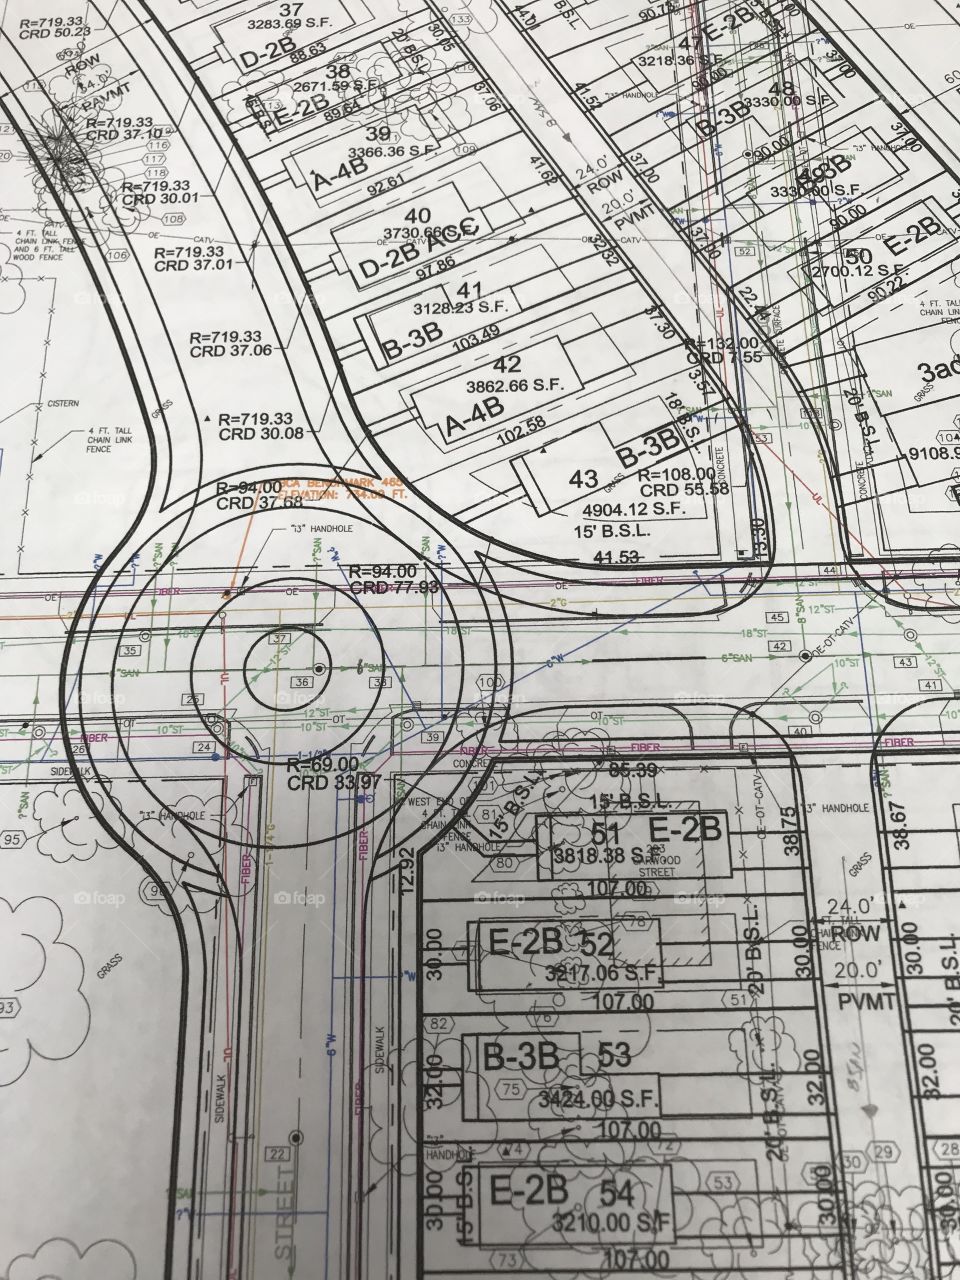 Roundabout blueprints 